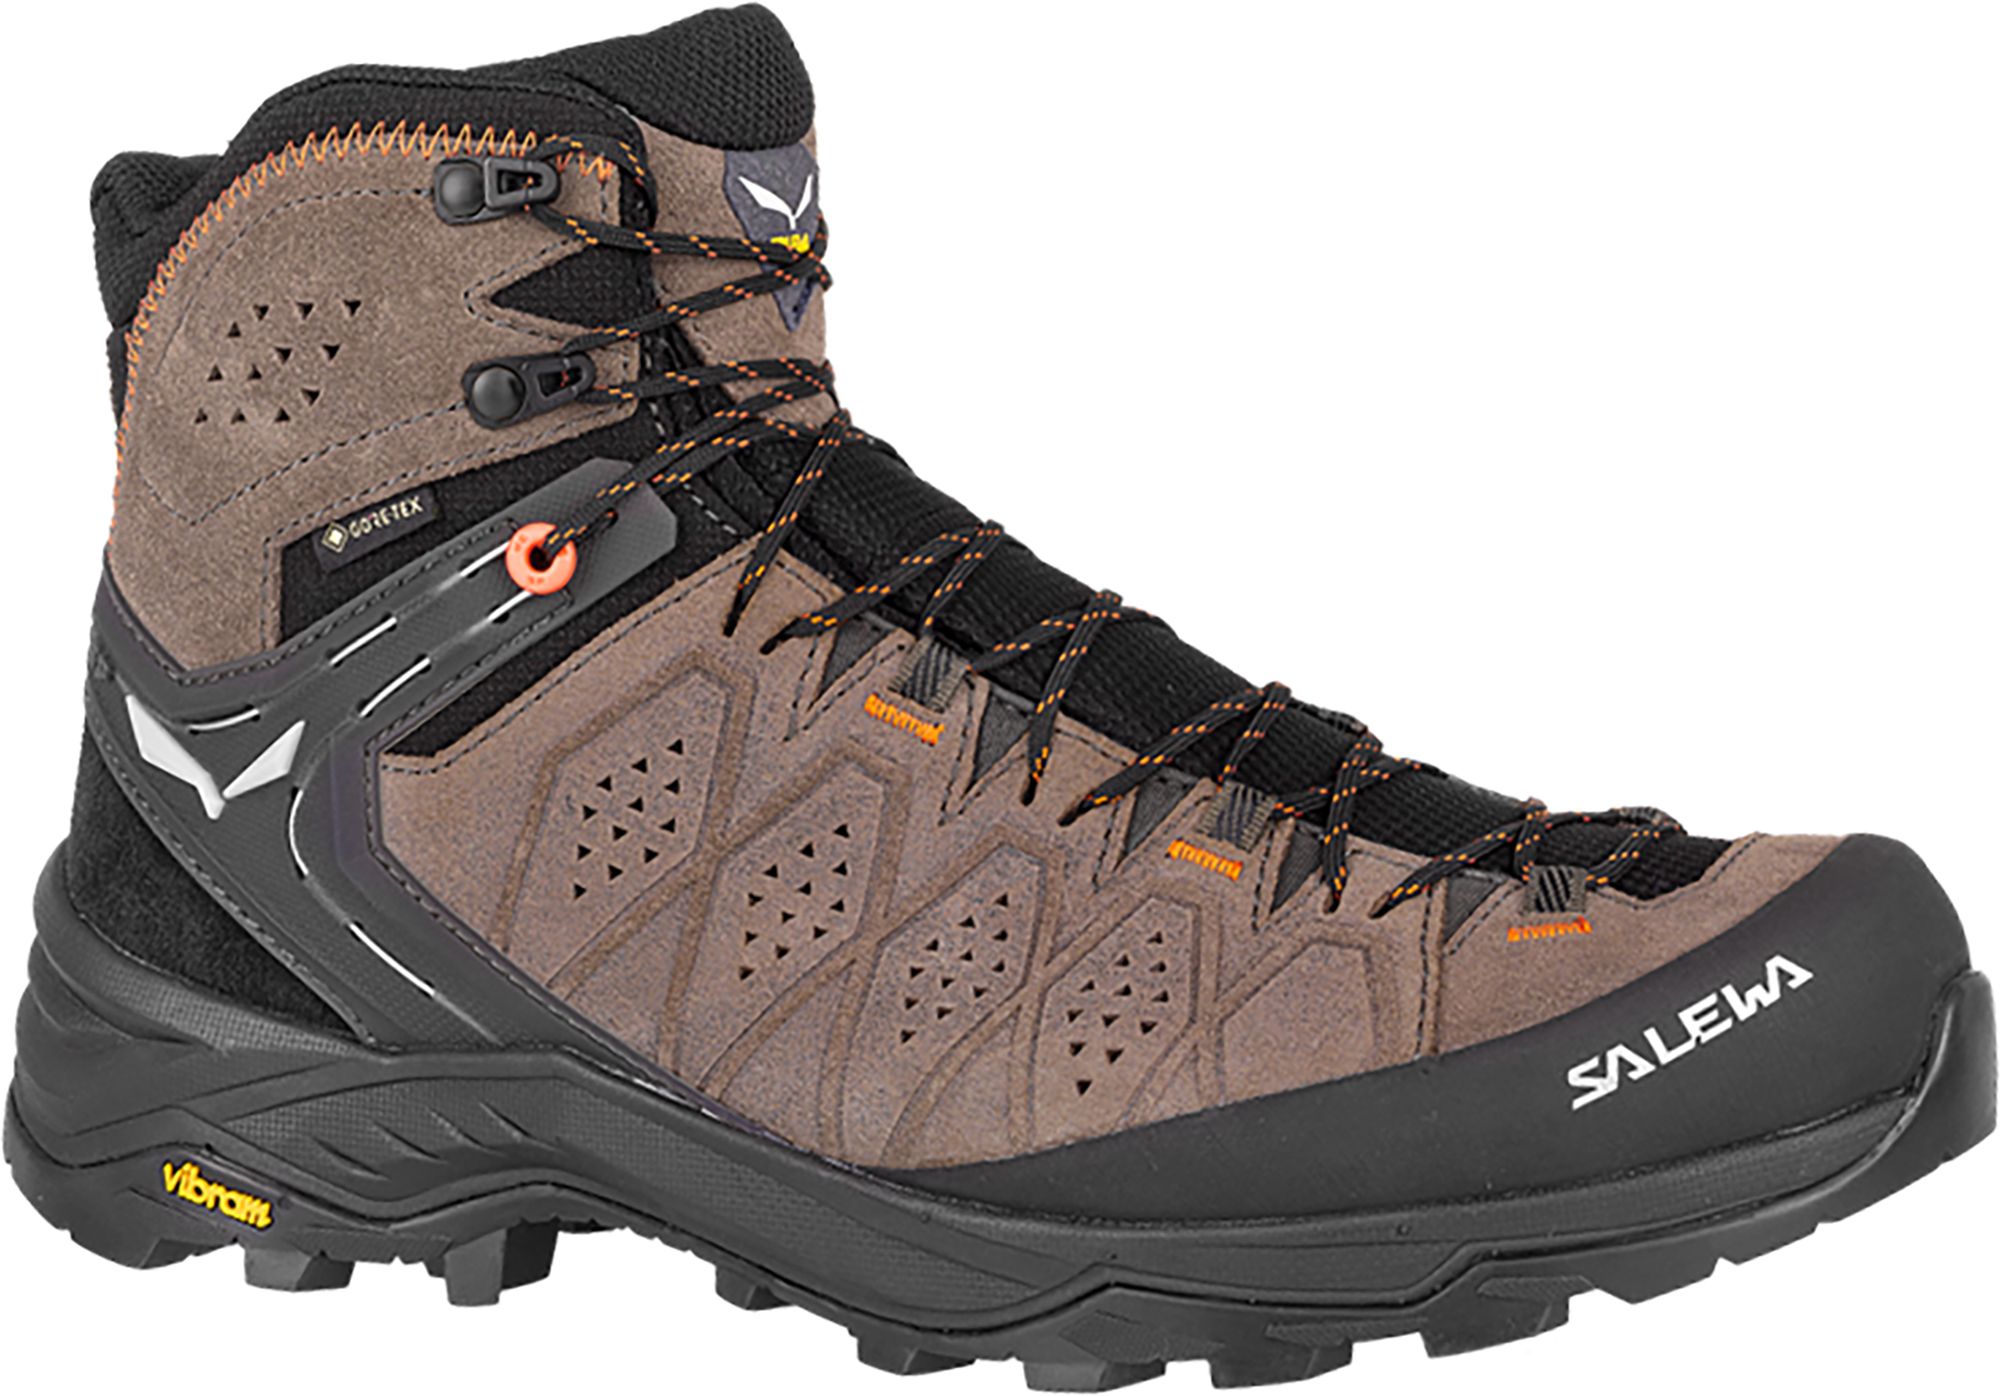 Photos - Trekking Shoes Salewa Men's Alp Trainer 2 GTX Hiking Boots, Size 10.5, Walnut 22IYPMMLPTR 